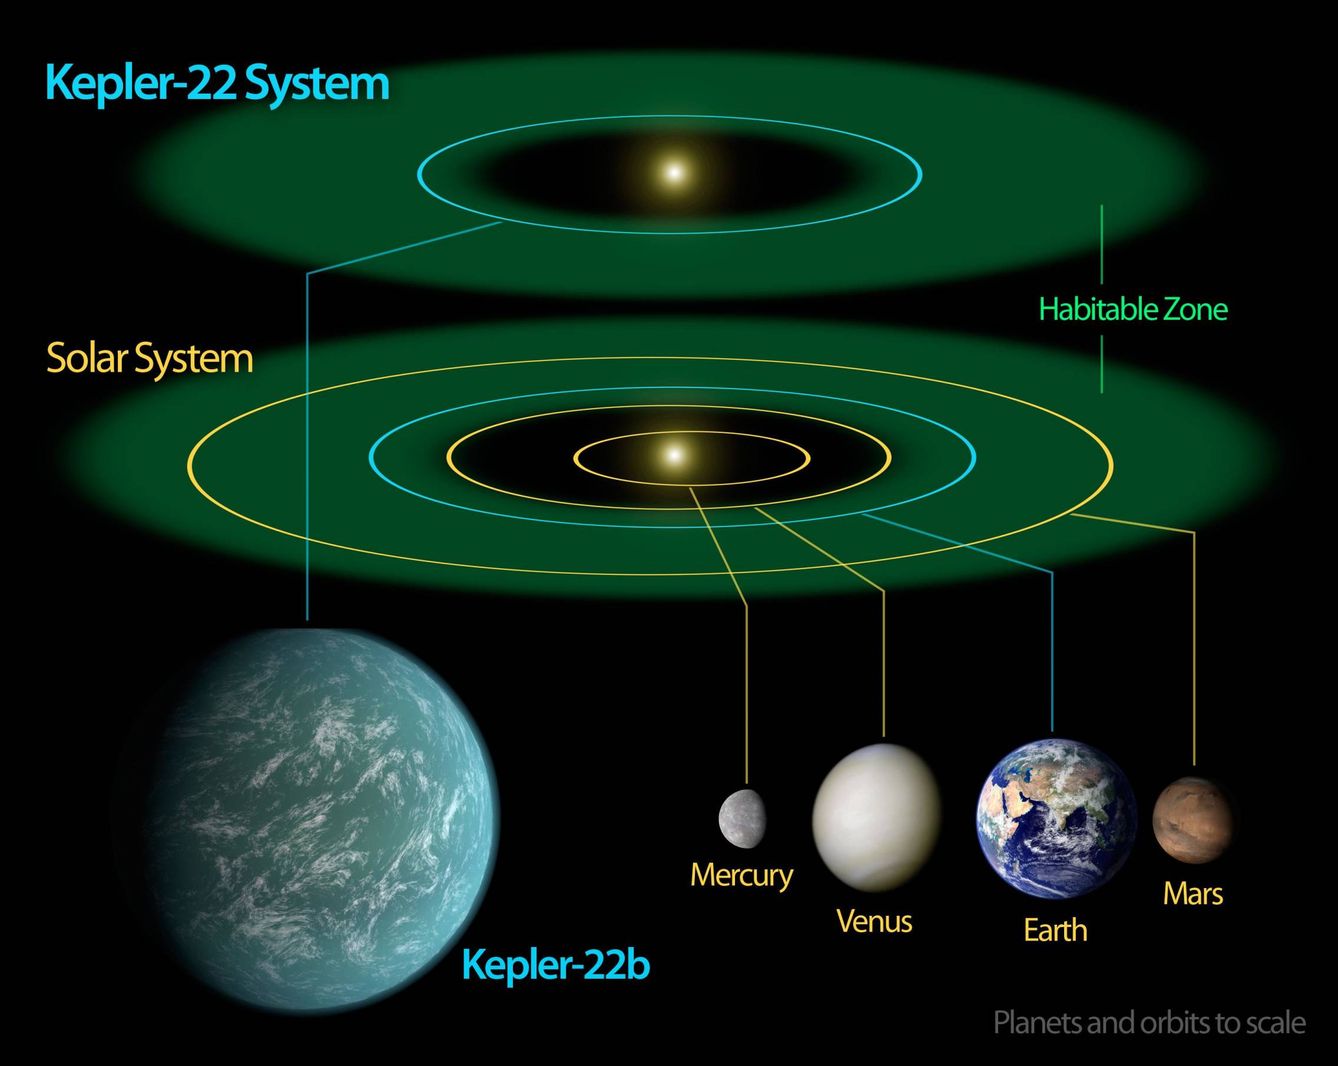 La zona de habitabilidad del sistema solar y del sistema Kepler 22 (NASA)